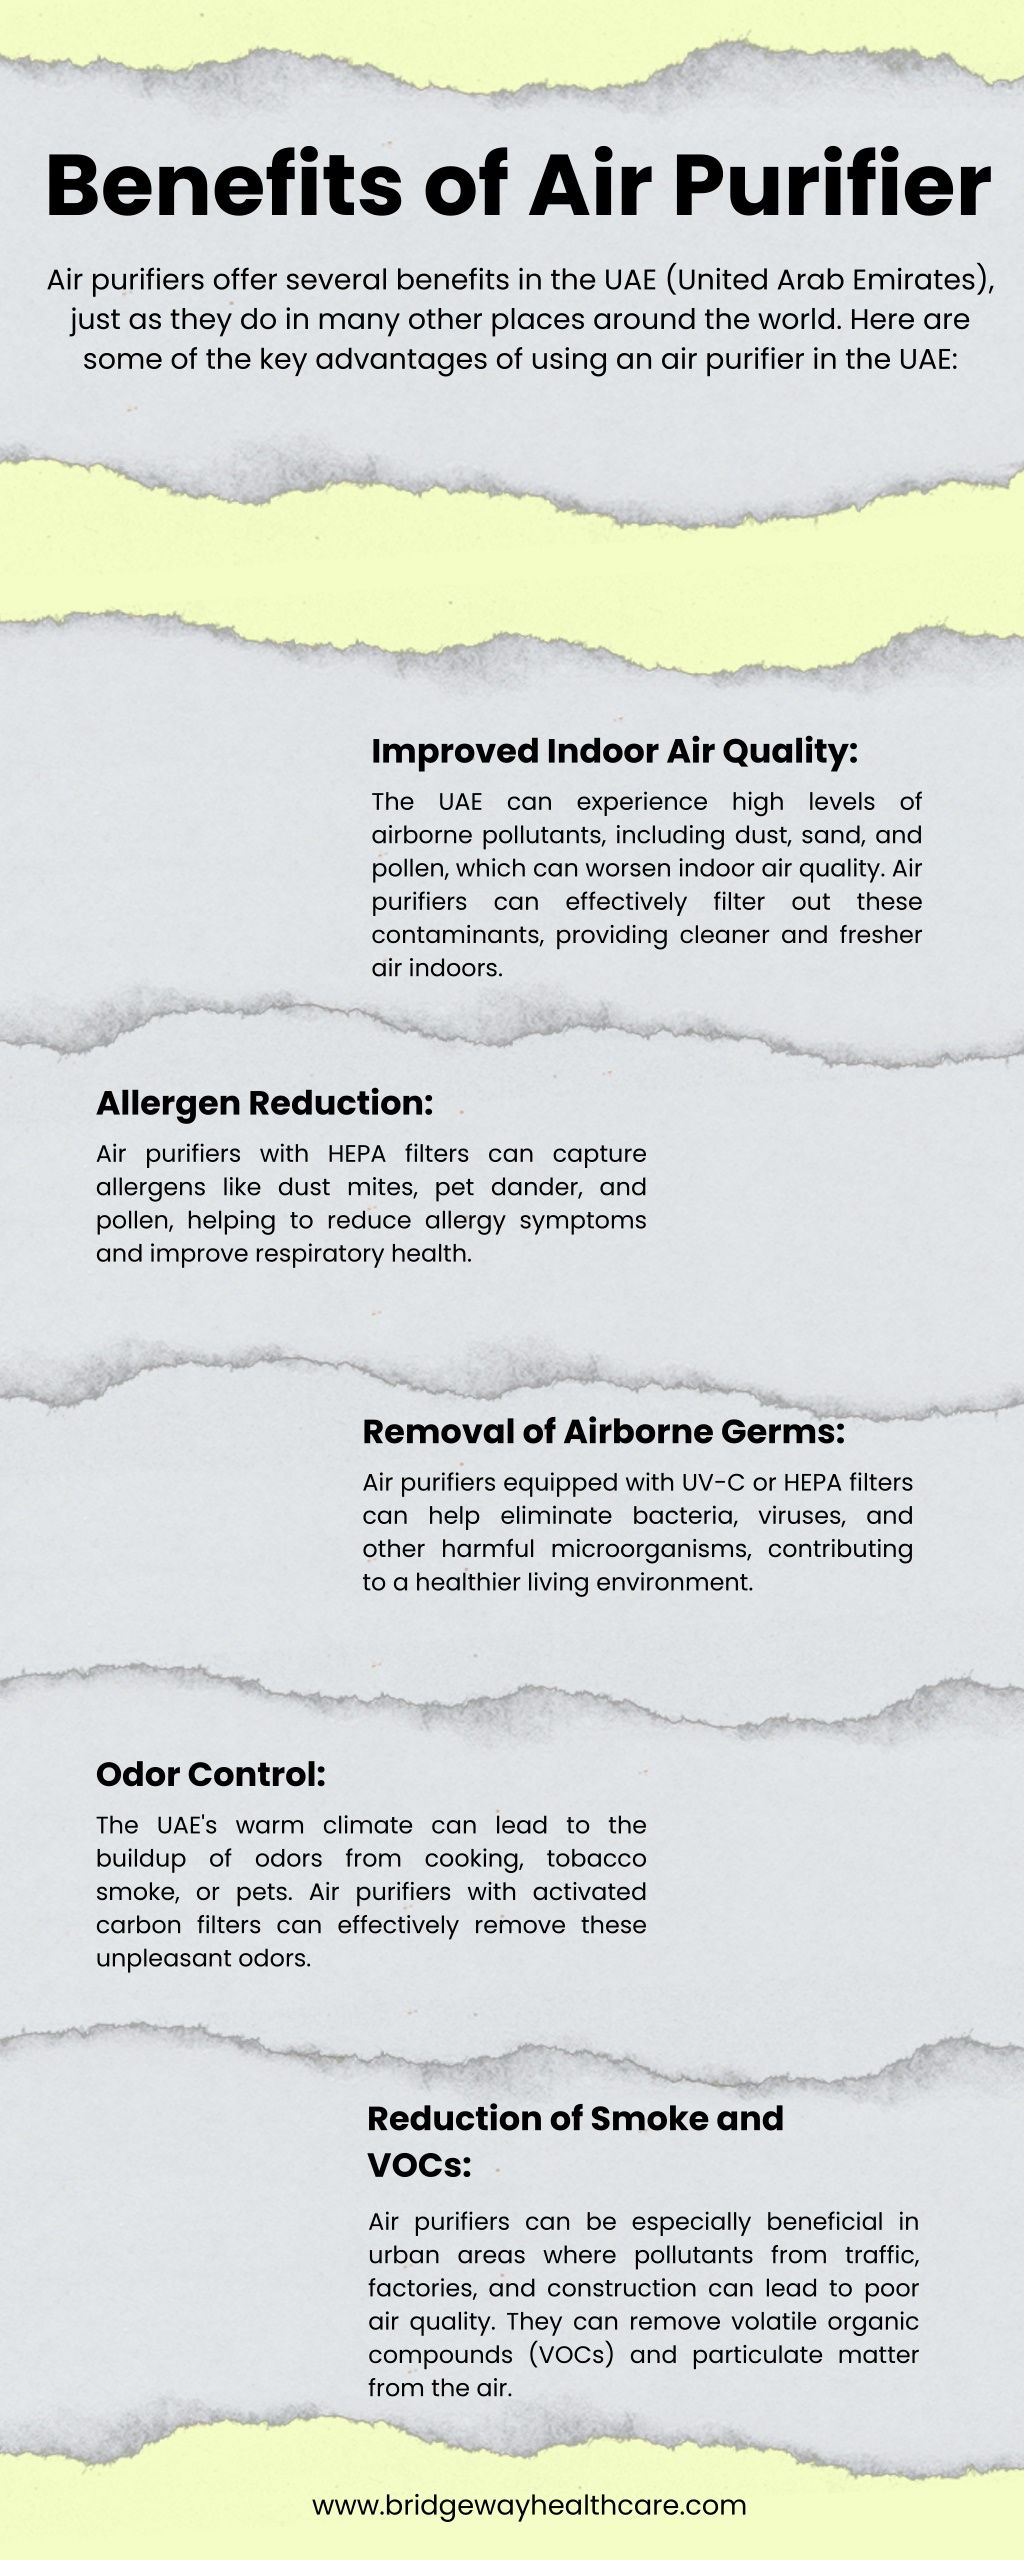 6 benefits of an air purifier